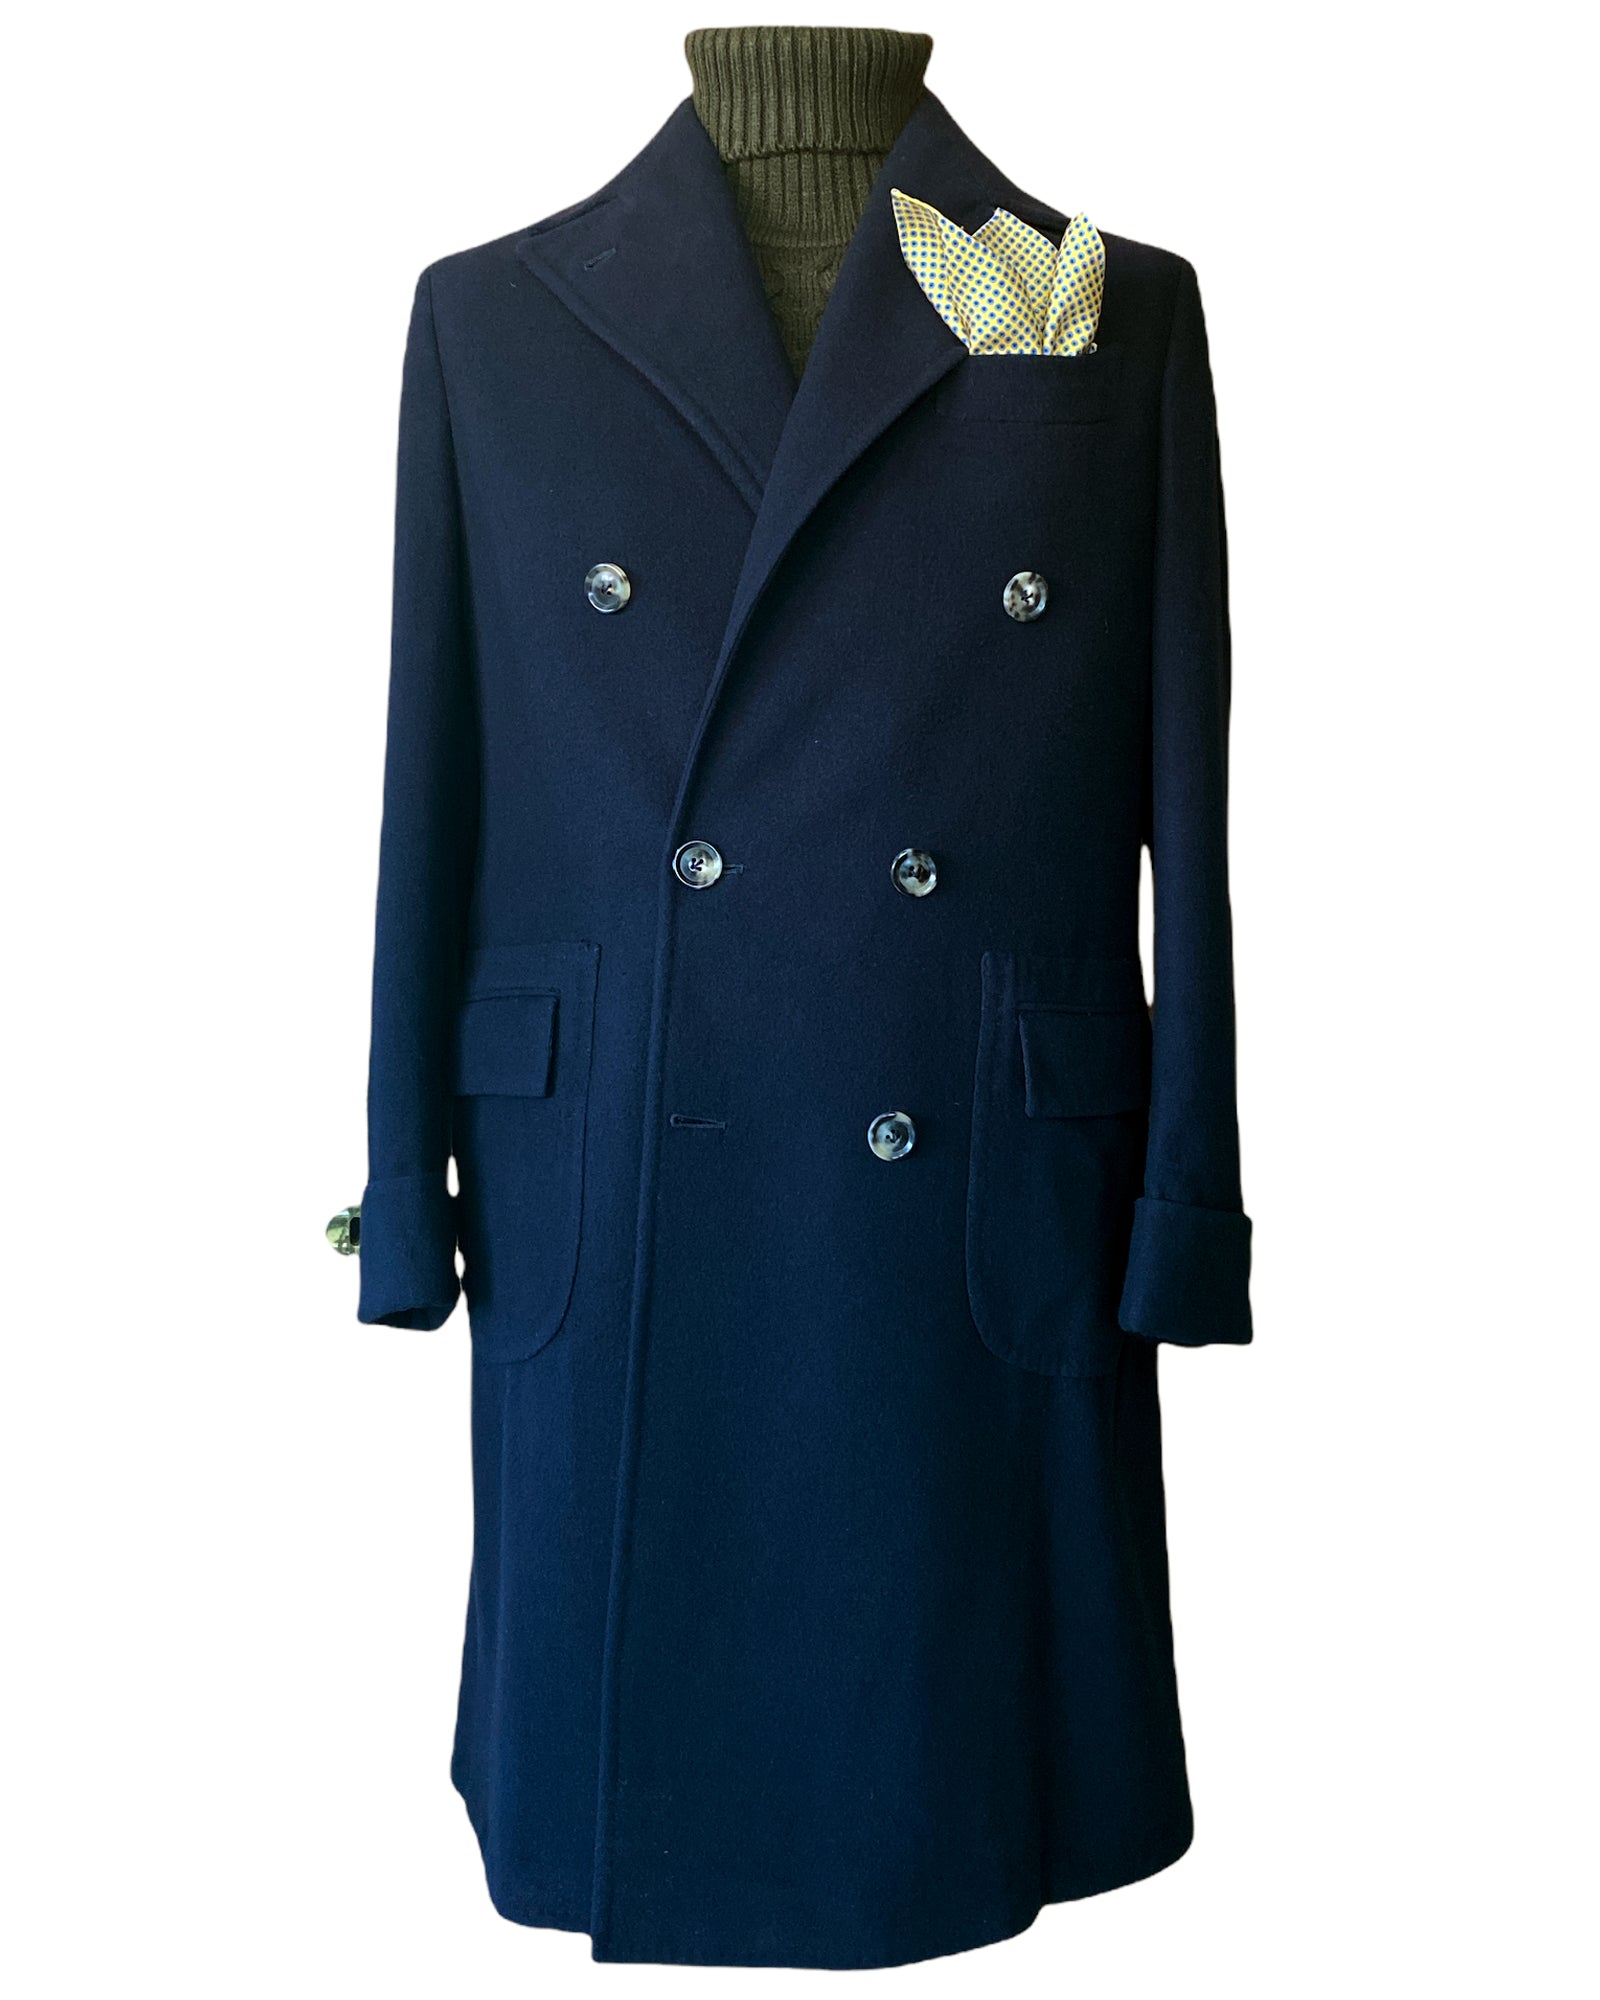 Ulster Navy Blue Overcoat